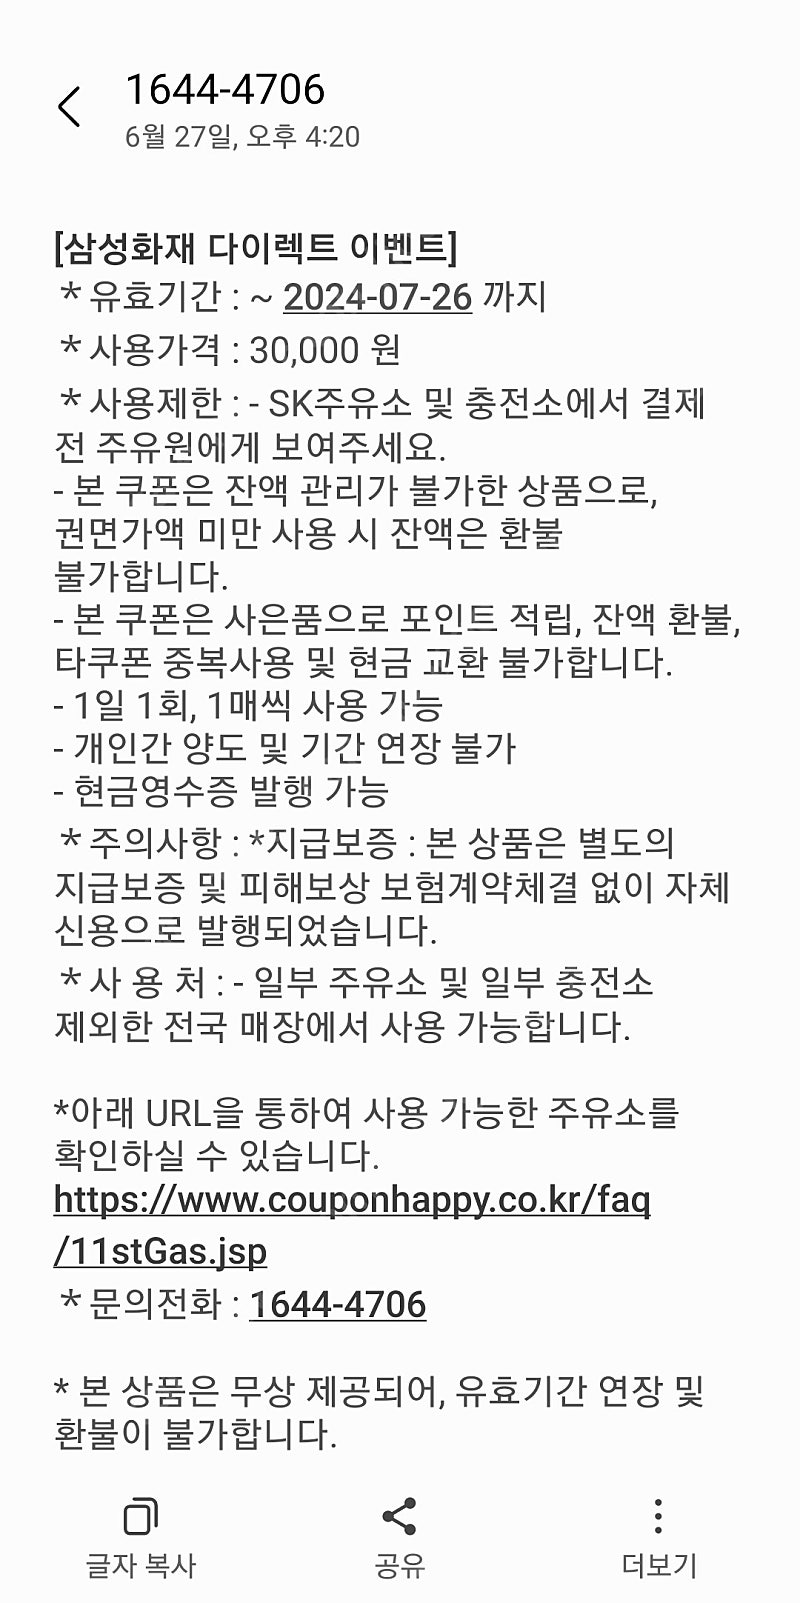 sk 모바일 주유권 3만원권 2매